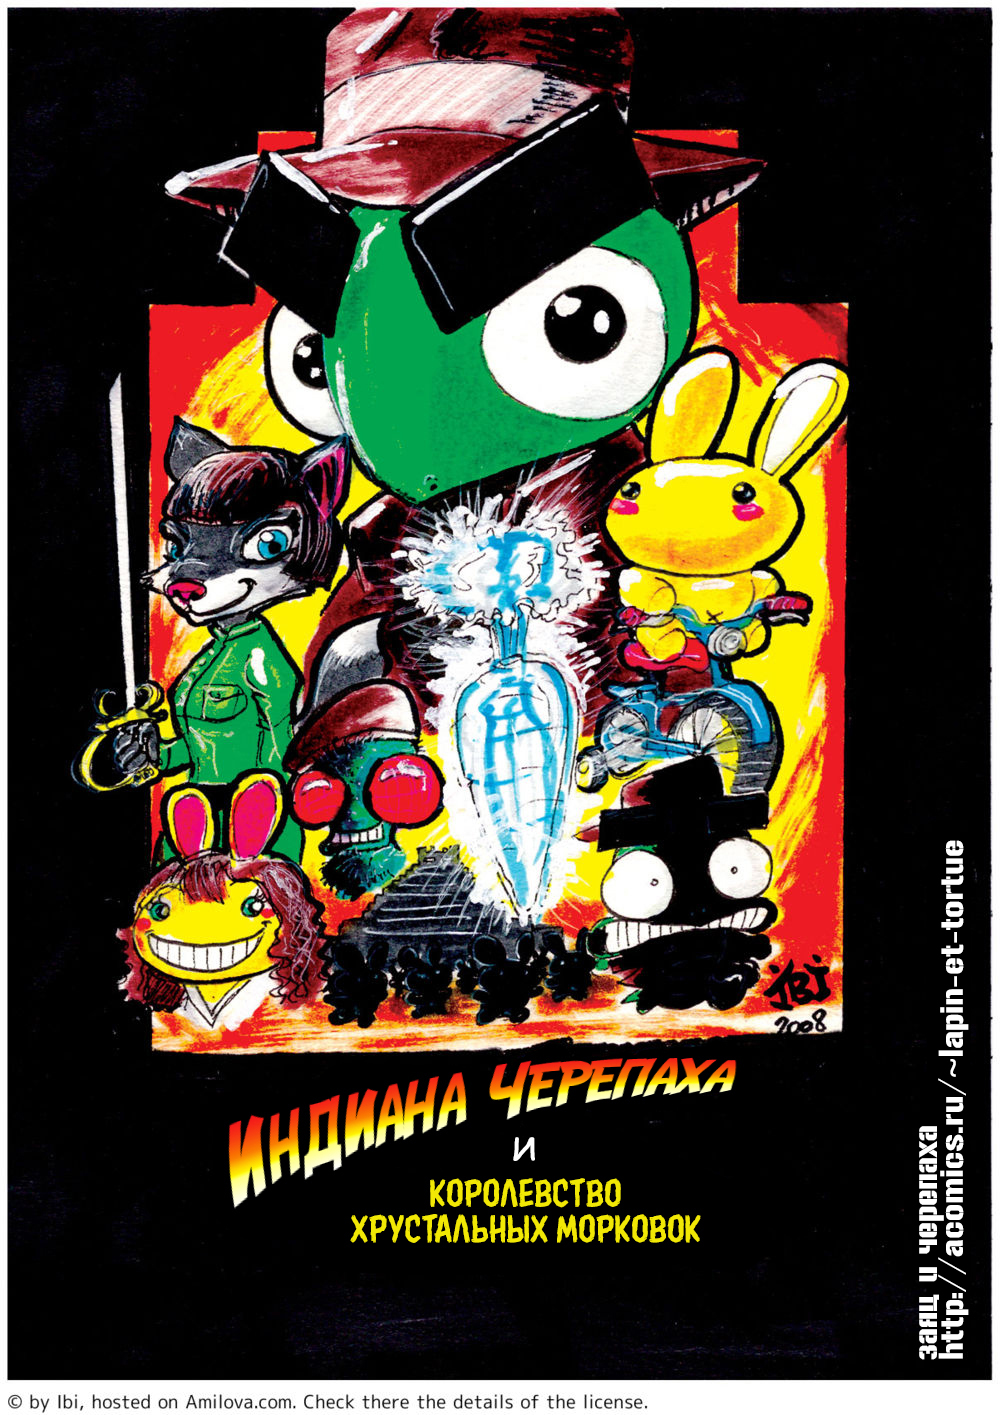 #15 Индиана Черепаха (постер-пародия)